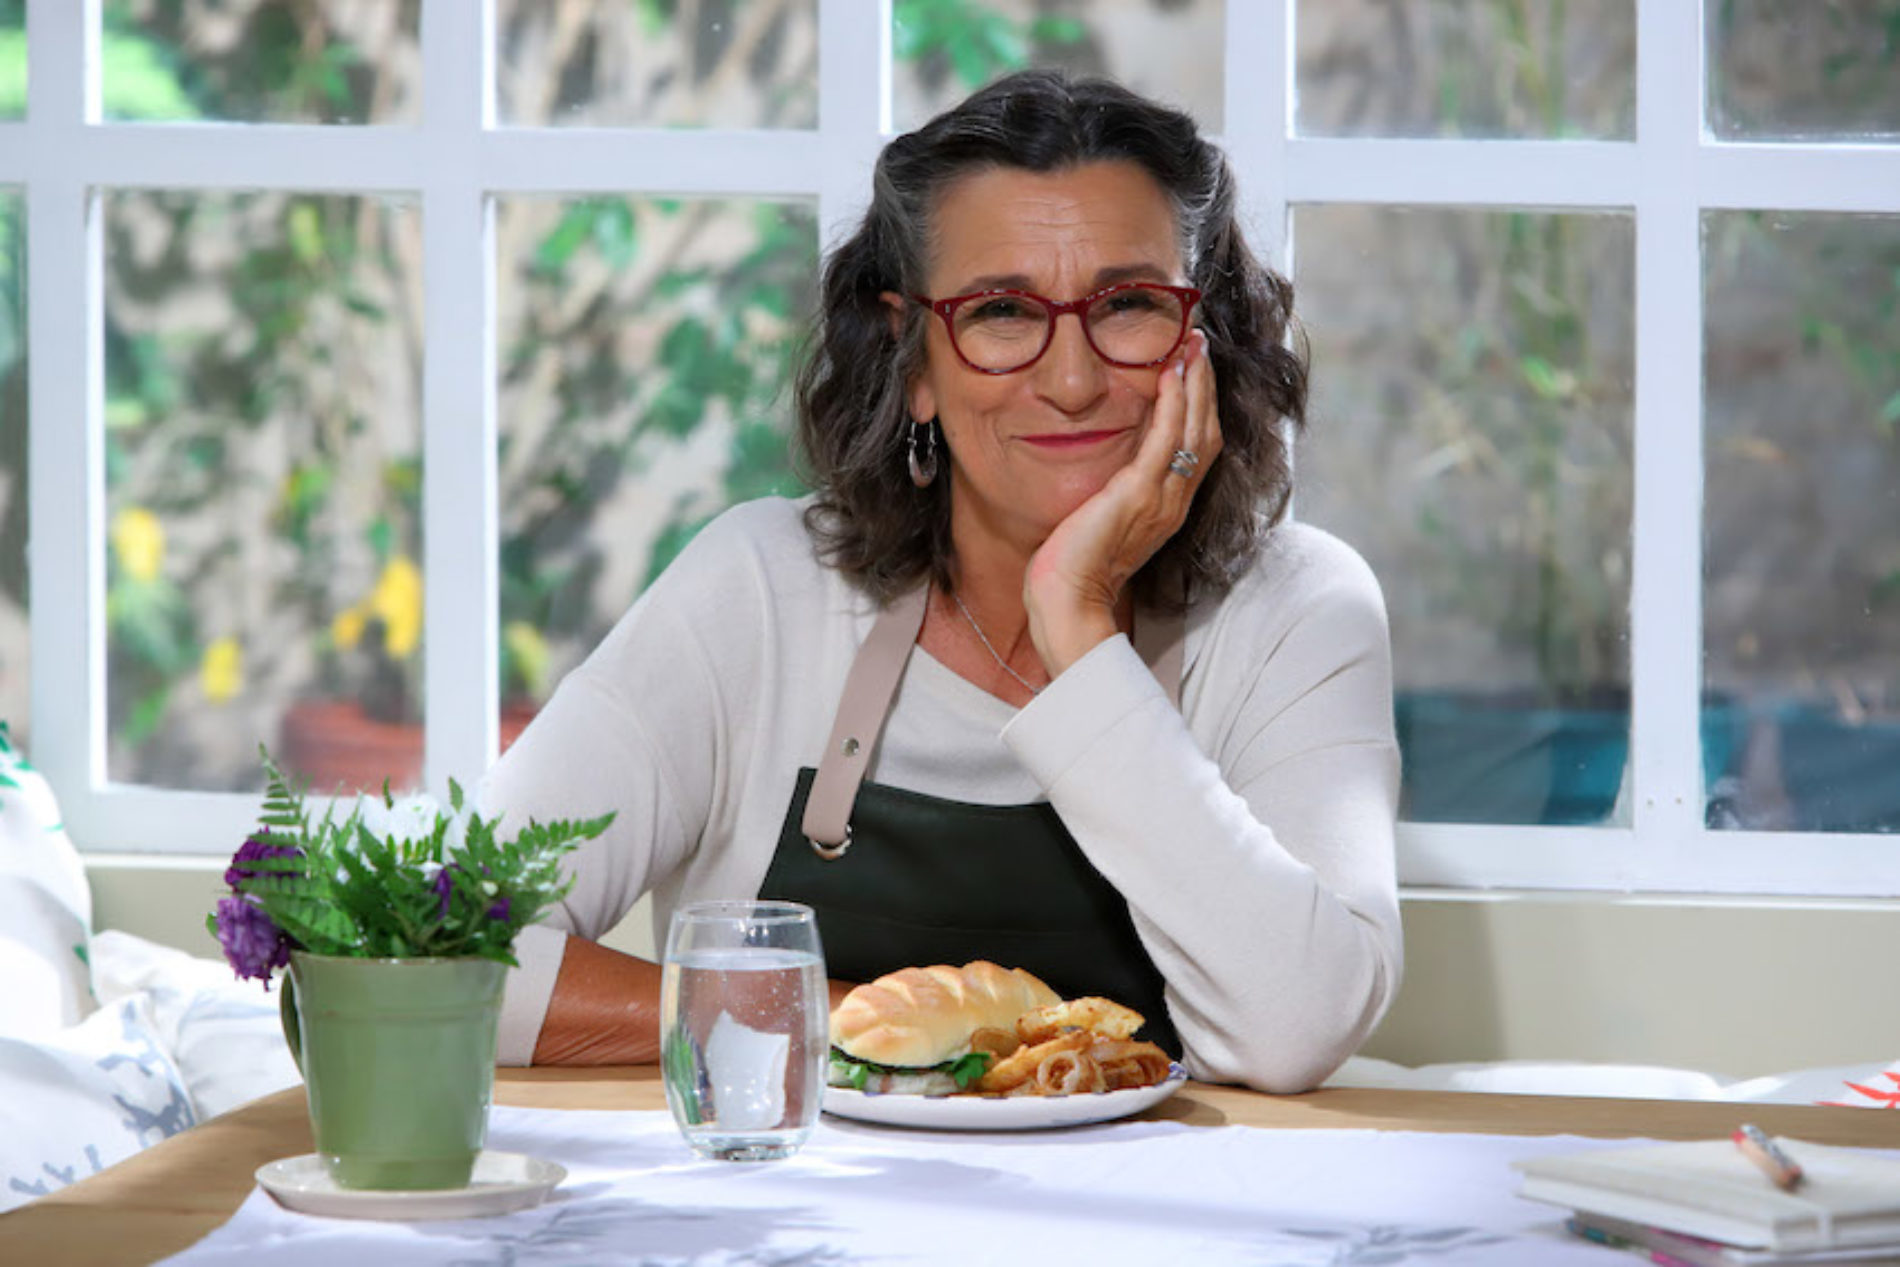 El recetario de Marcela Lovegrove en la nueva temporada de “Recetas de familia”